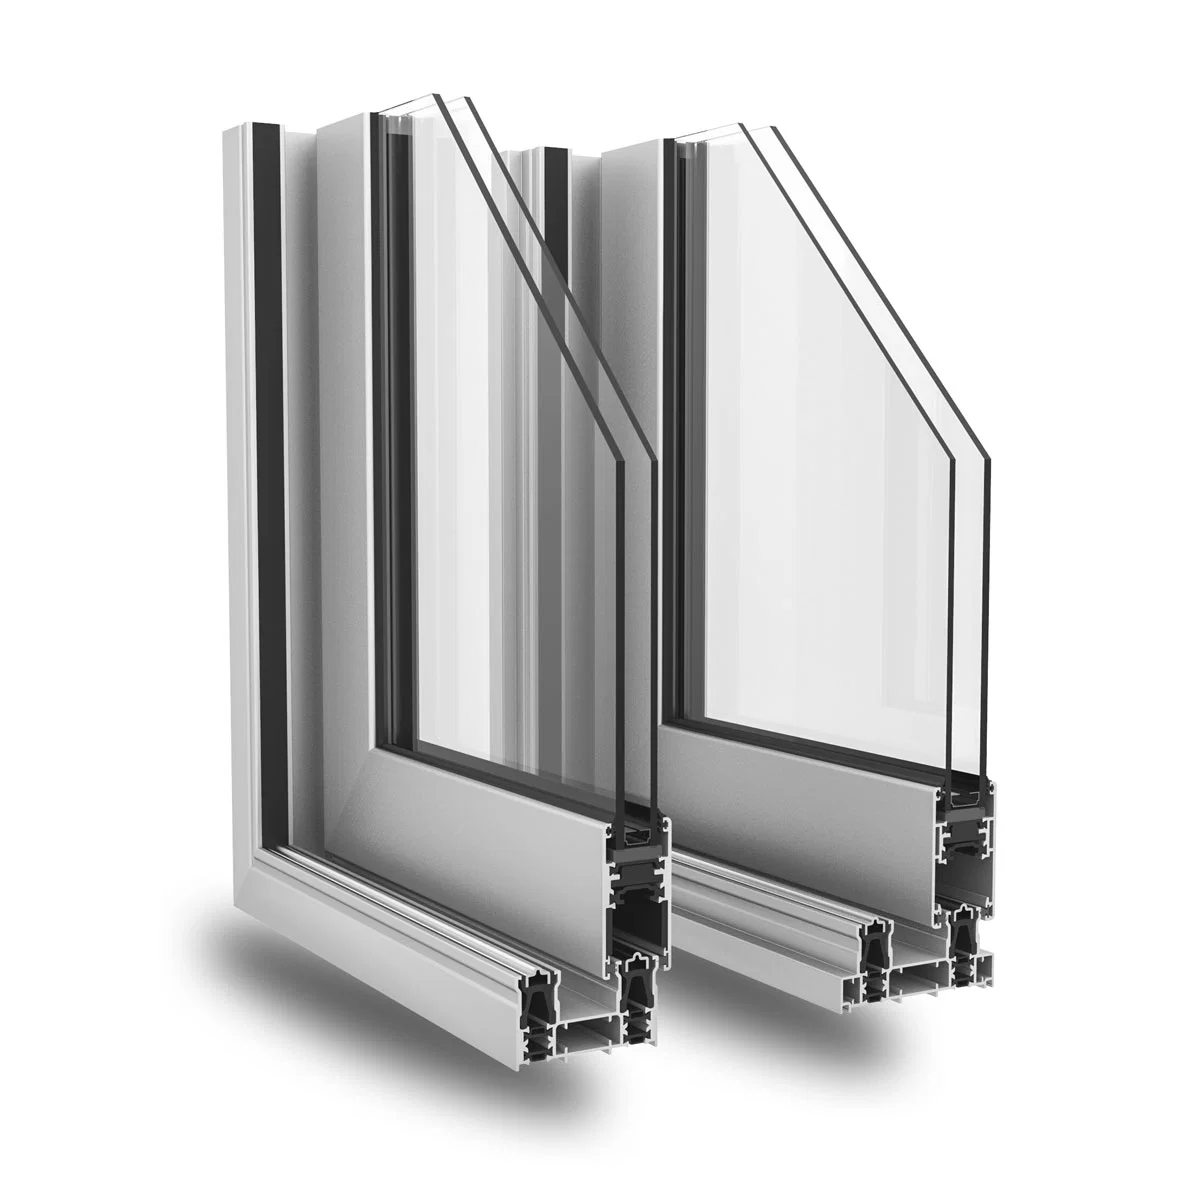 Aluminium 6063t5 Glass Window Aluminum Extrusion Profiles for Sliding Doors